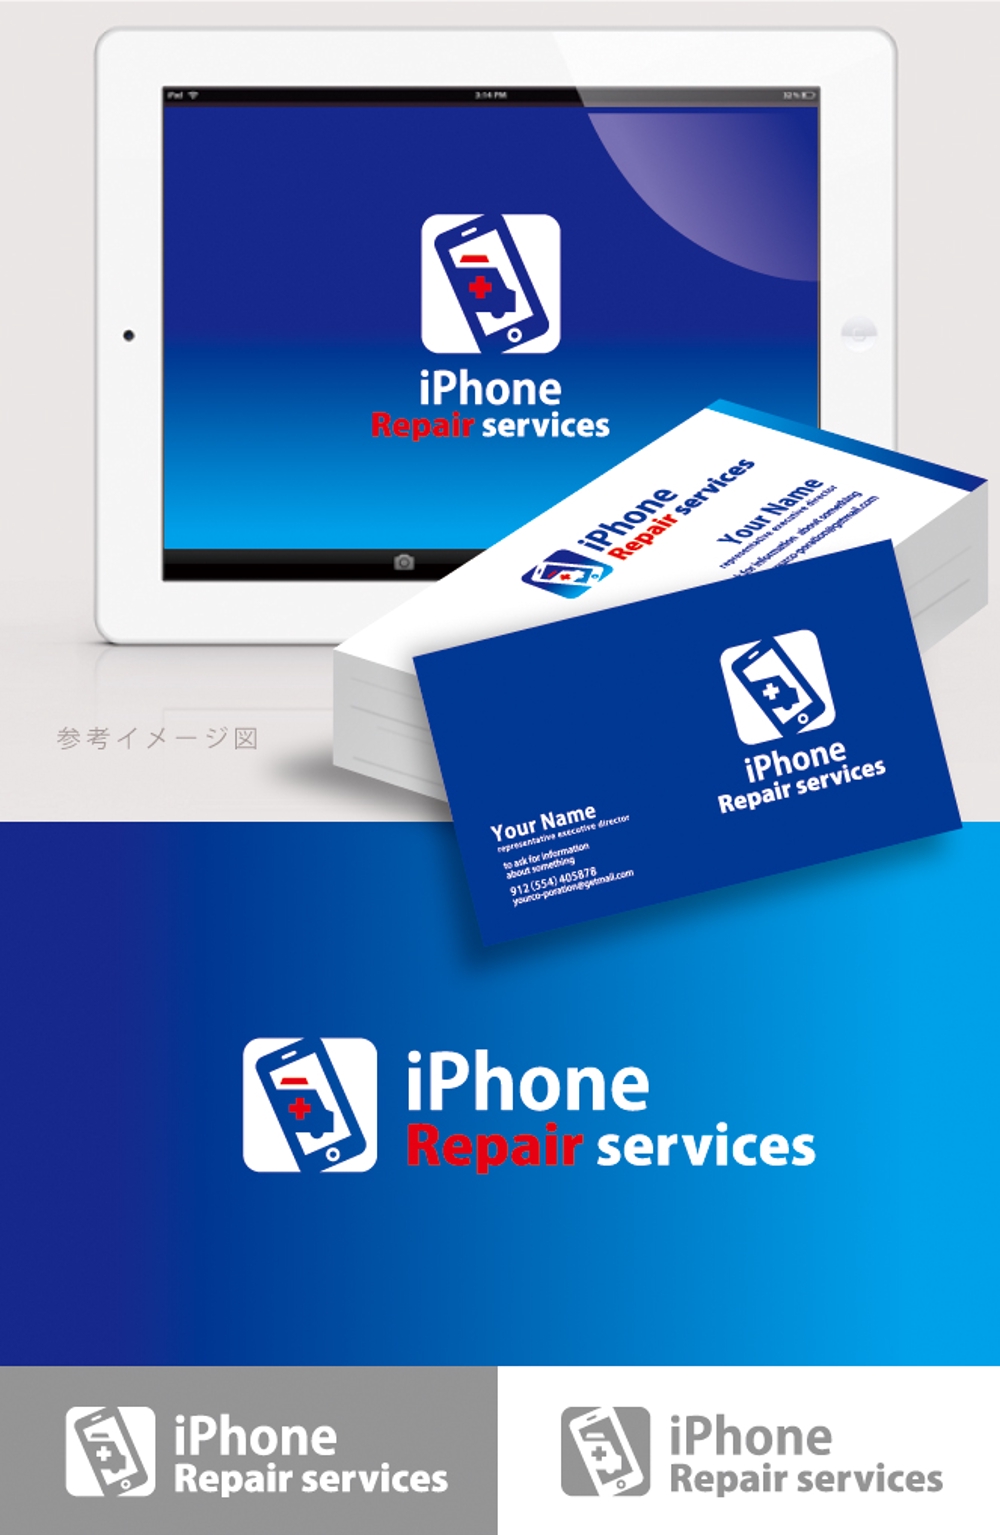 スマホ修理店「iPhoneリペアサービス」のロゴデザイン